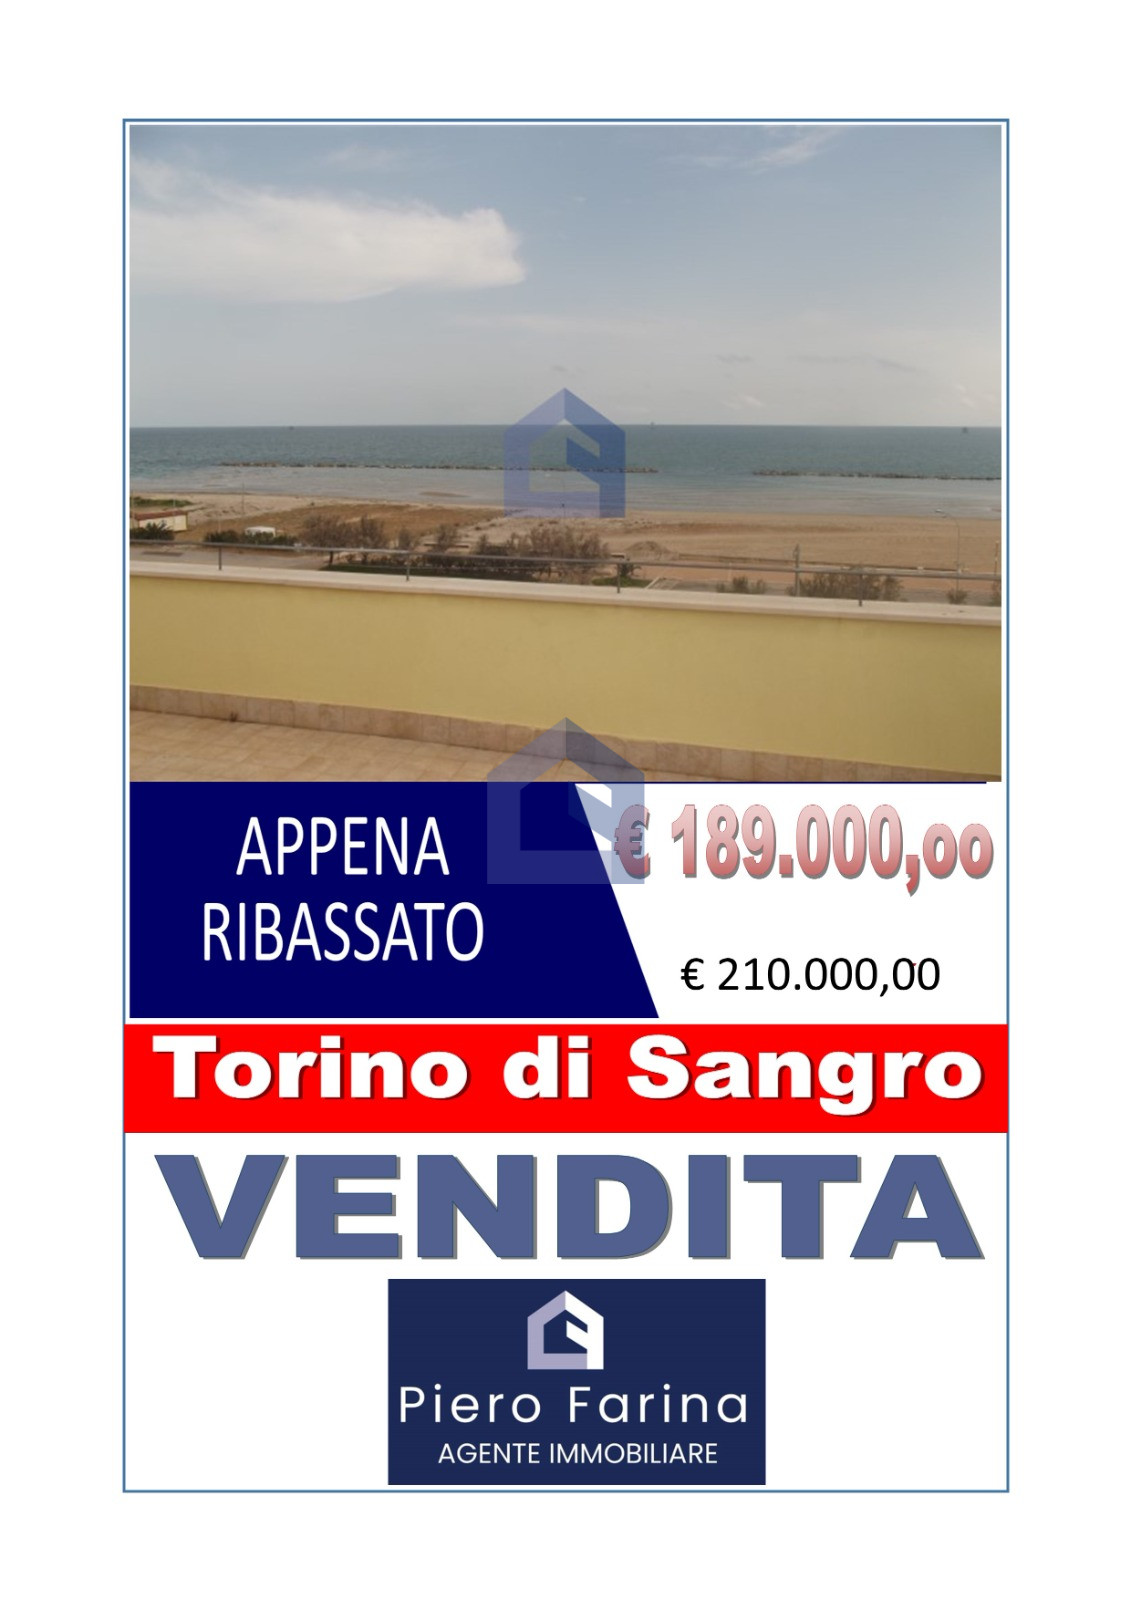 Torino di Sangro: Duplex esclusivo sul mare  [V9177]